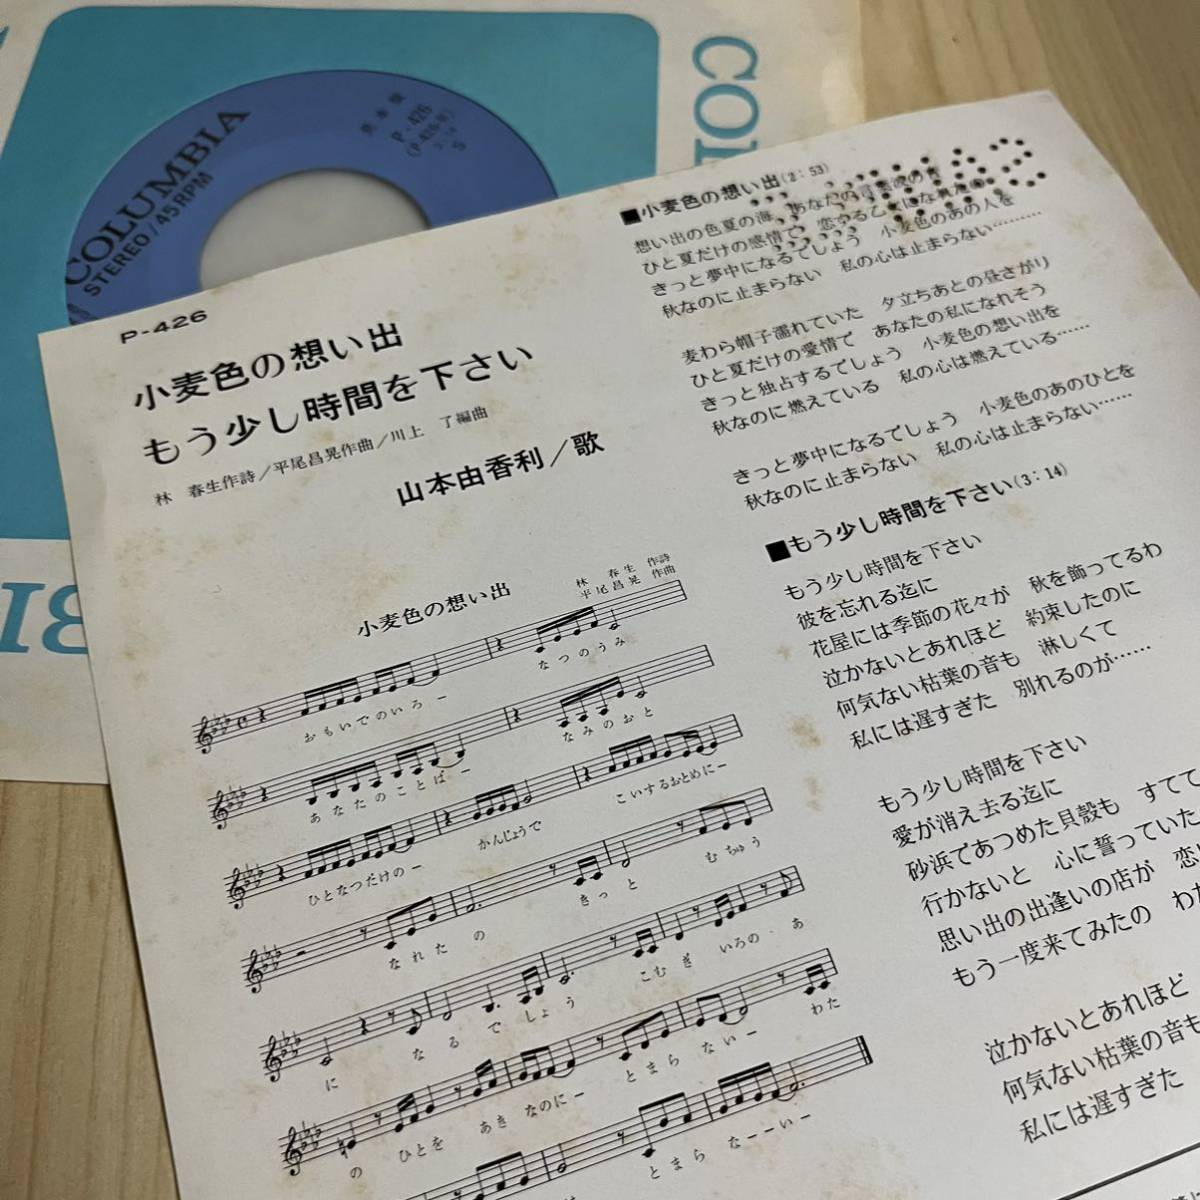 【7inch】山本由香利 小麦色の想い出 もう少し時間を下さい YUKARI YAMAMOTO / EP レコード / P-426 / 和モノ 昭和歌謡/_画像3